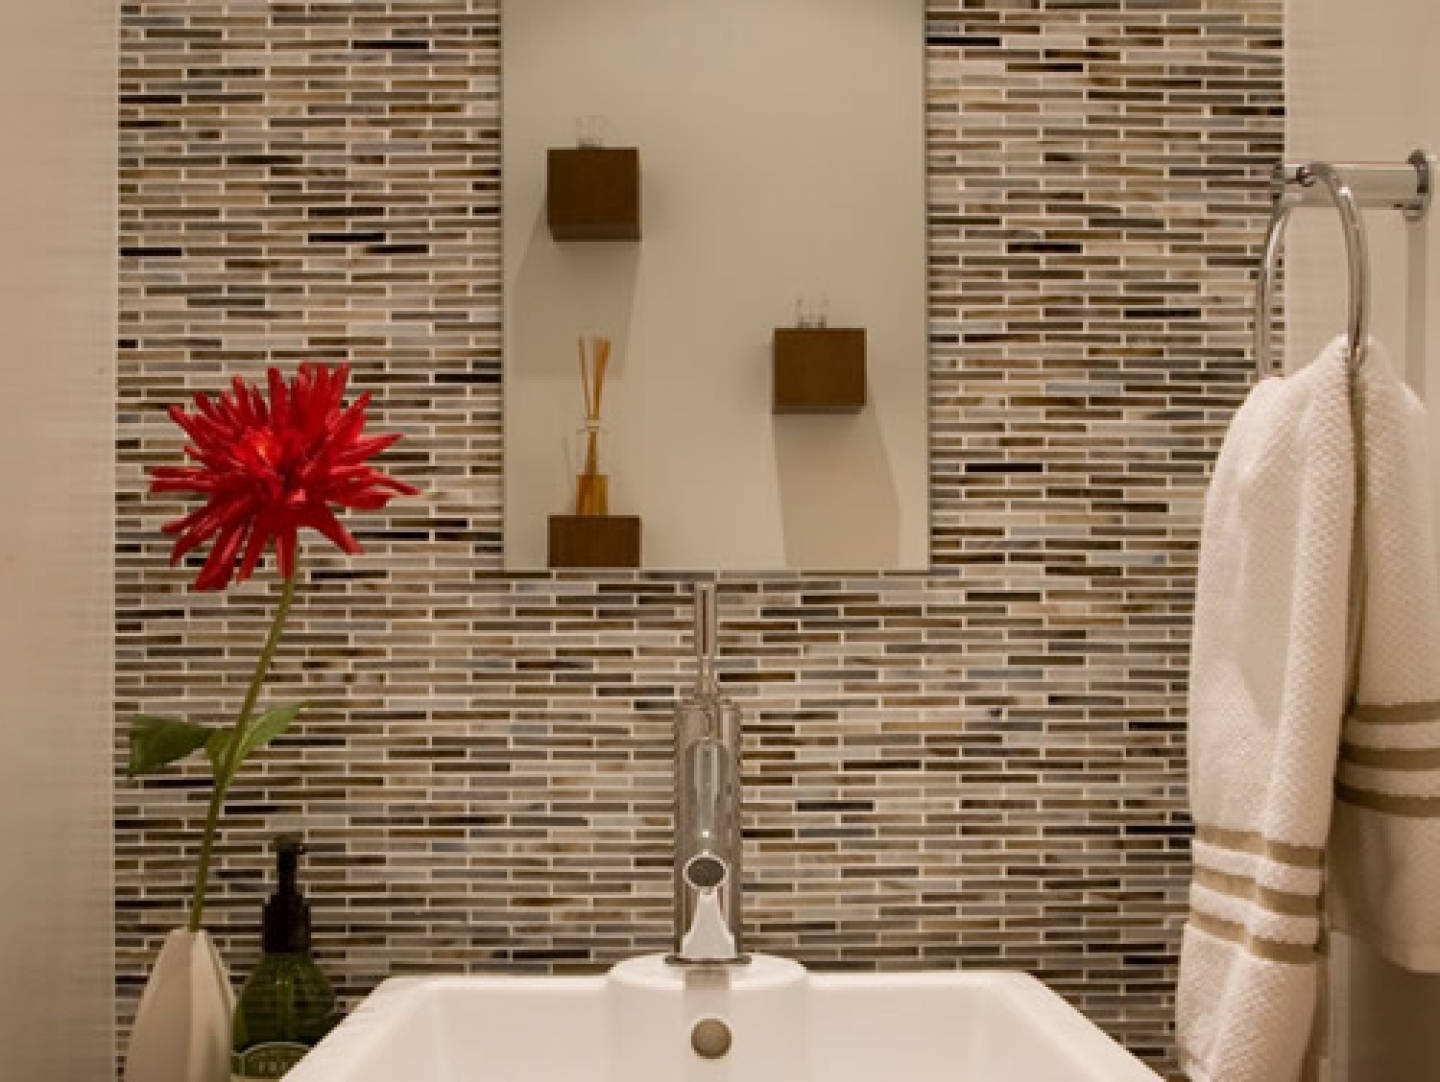 Мозаика для ванной plitka mosaica ru. Мозаика в ванной комнате. Плитка мозаика для ванной. Плитка в ванную мозаика. Мозаичная плитка для ванной.